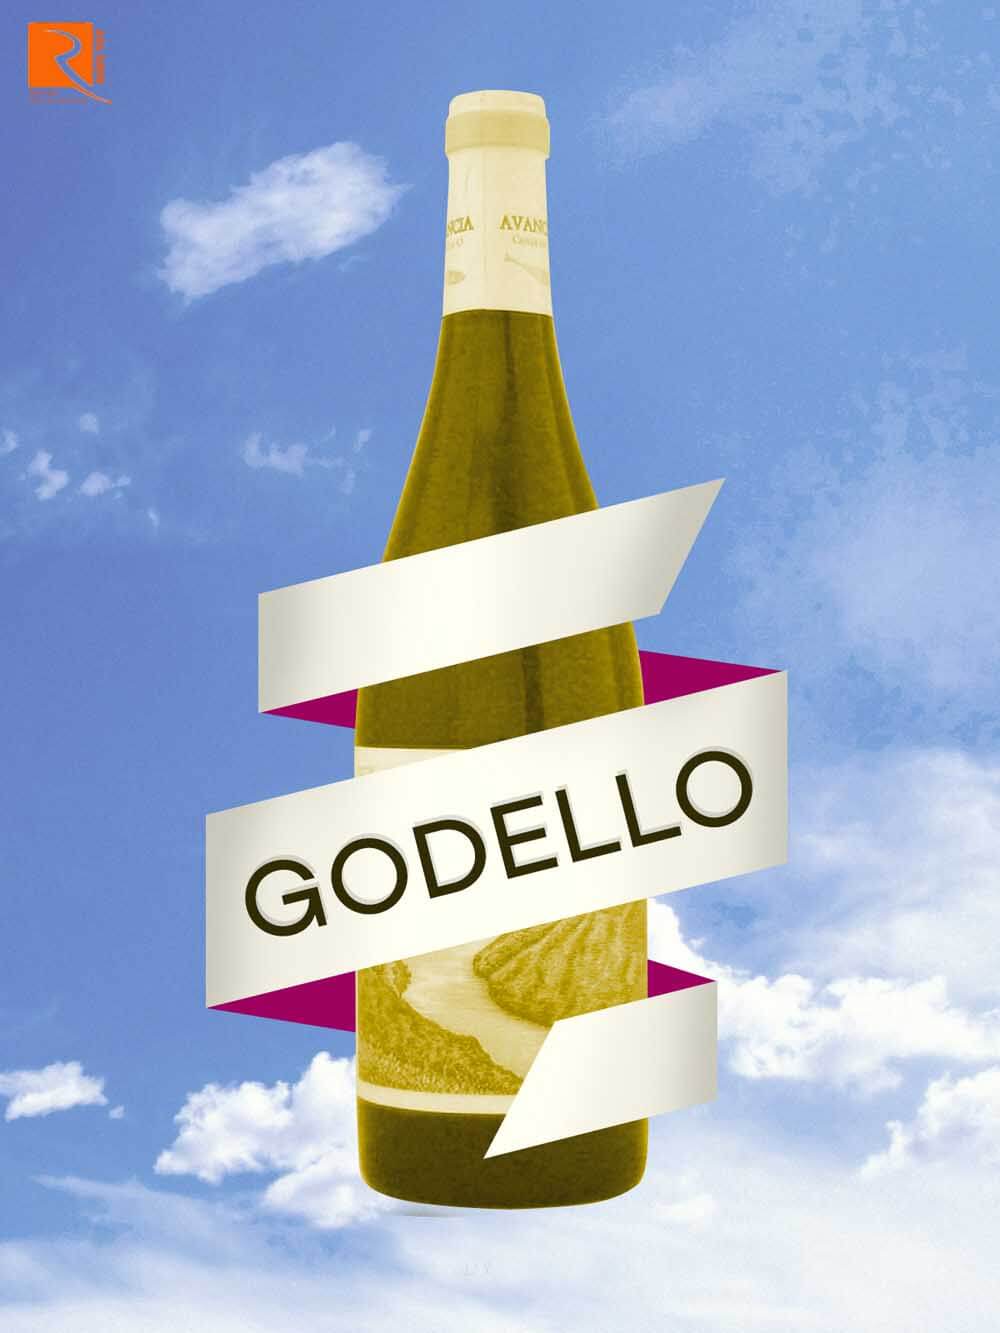 Godello